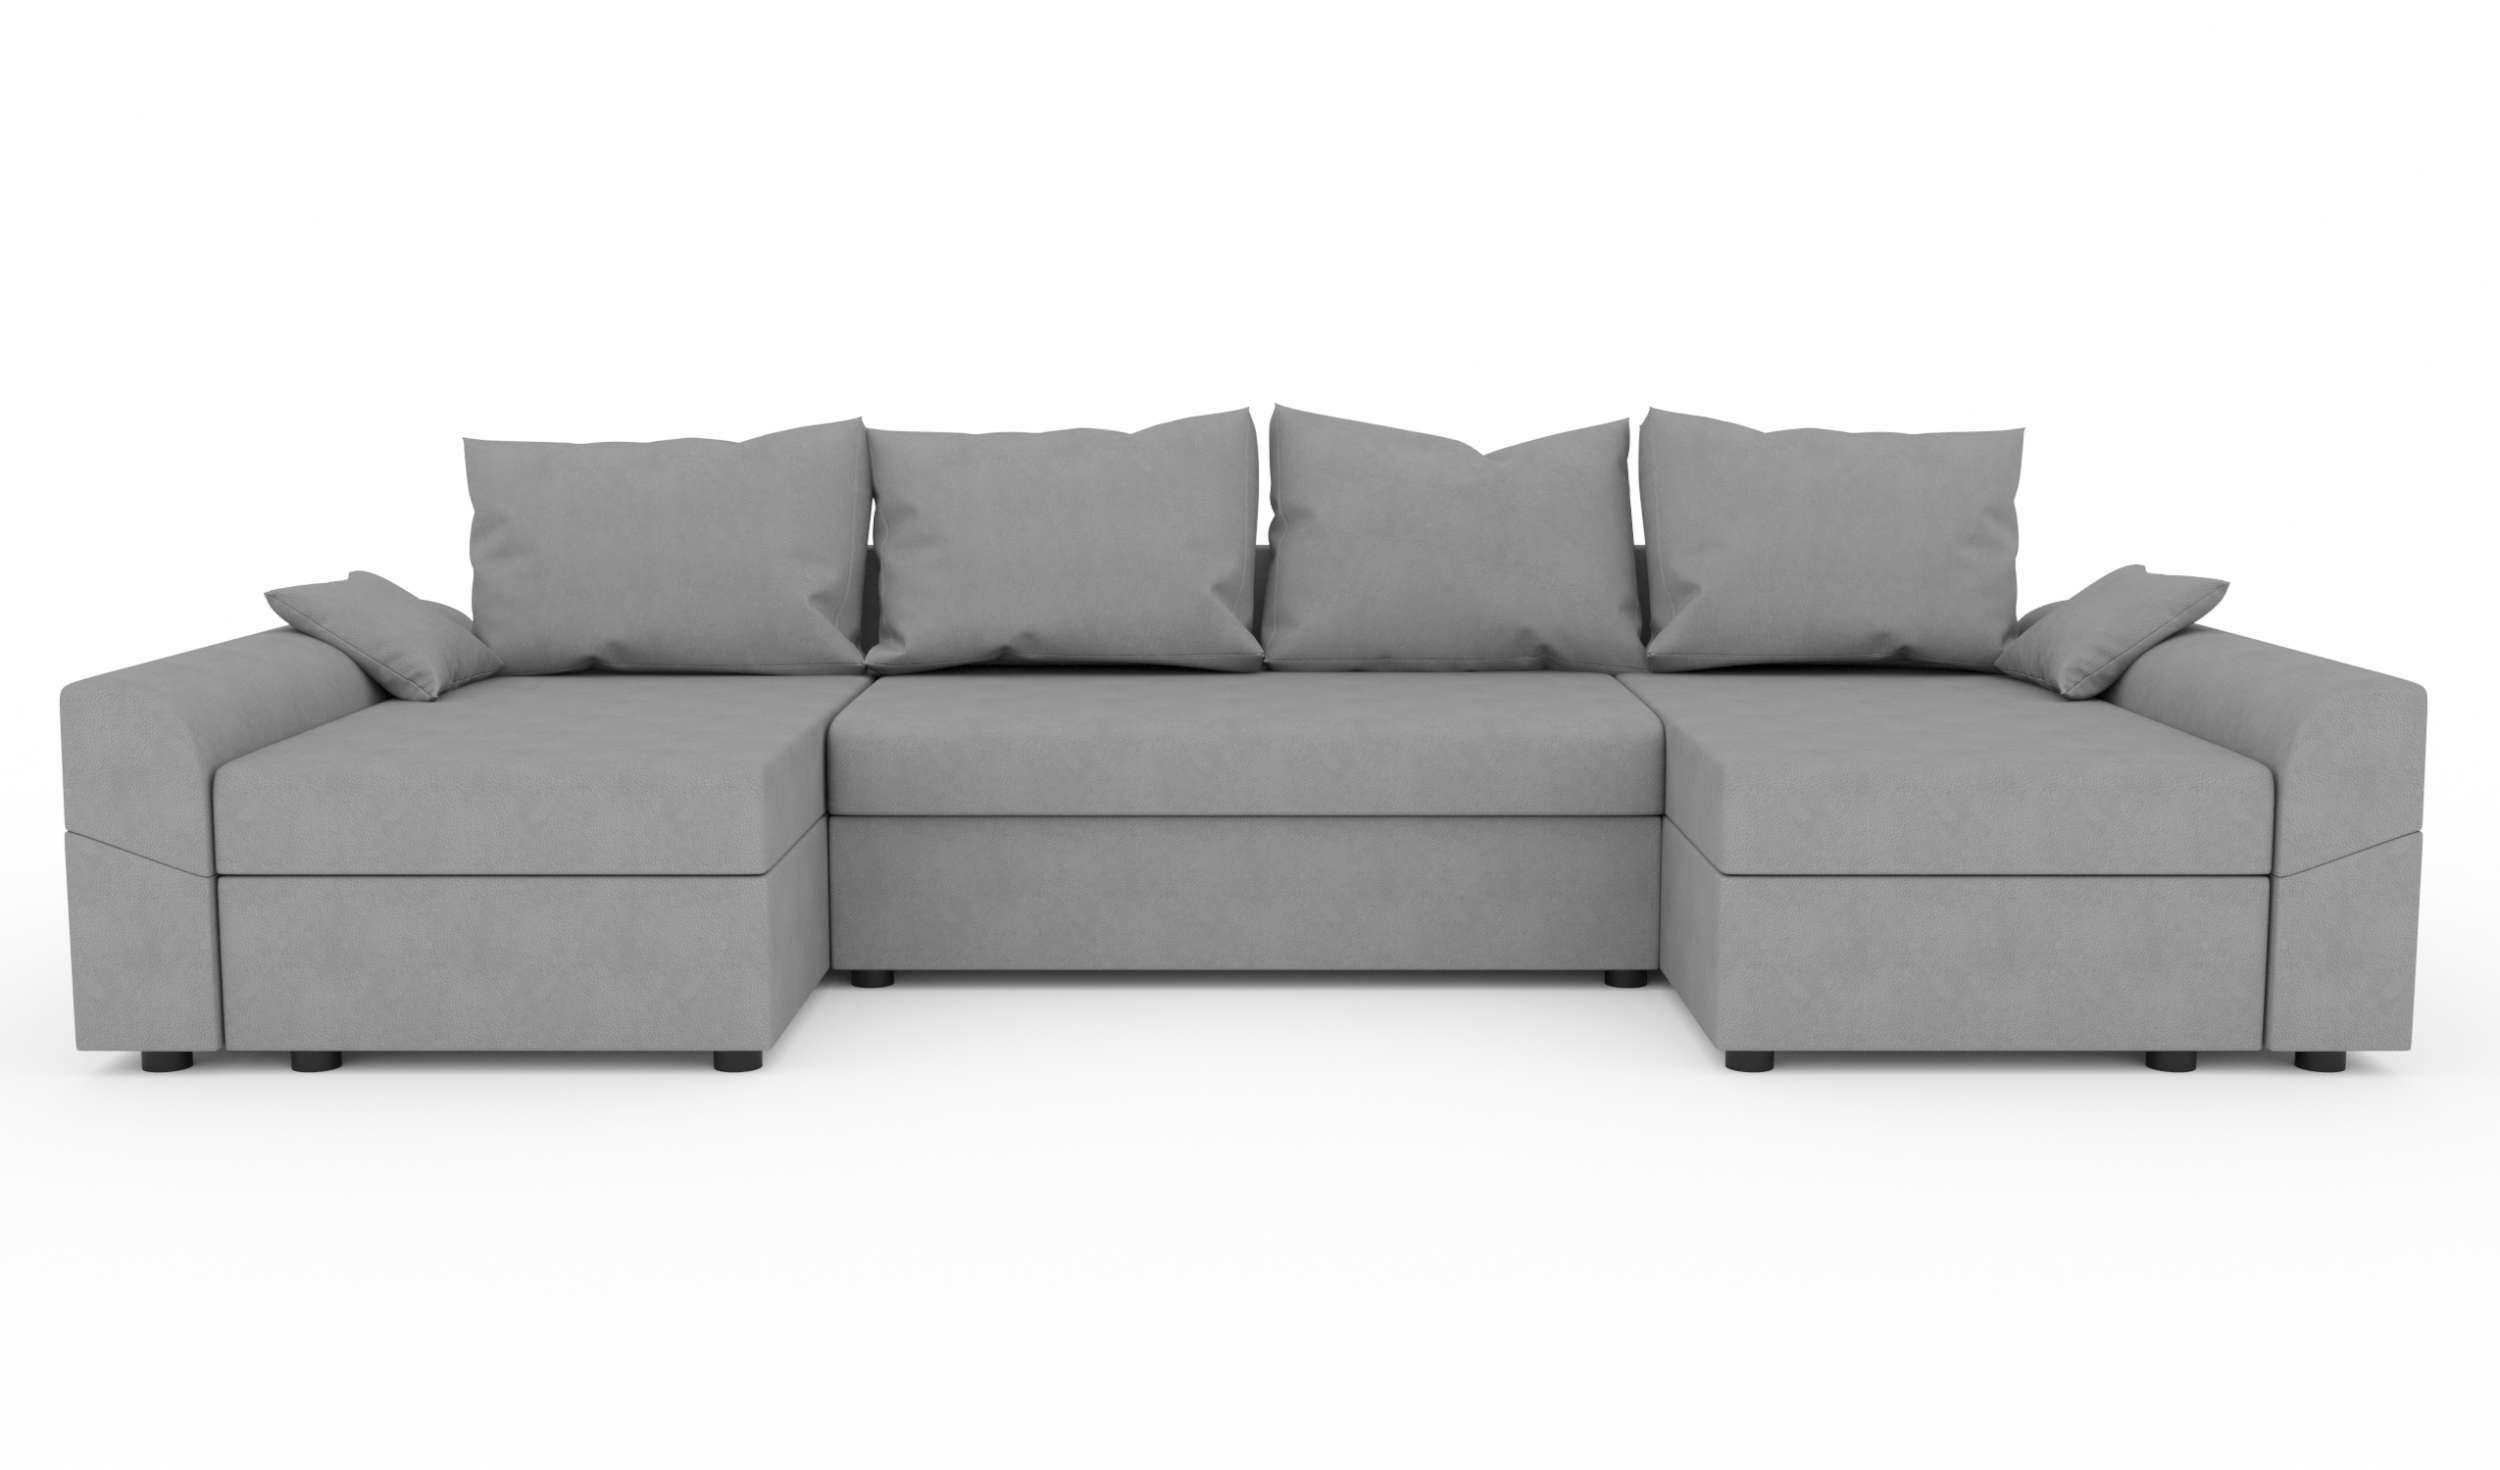 Eckcouch, U-Form, mit Wohnlandschaft Carolina, Bettkasten, Sitzkomfort, Stylefy Modern mit Sofa, Bettfunktion, Design